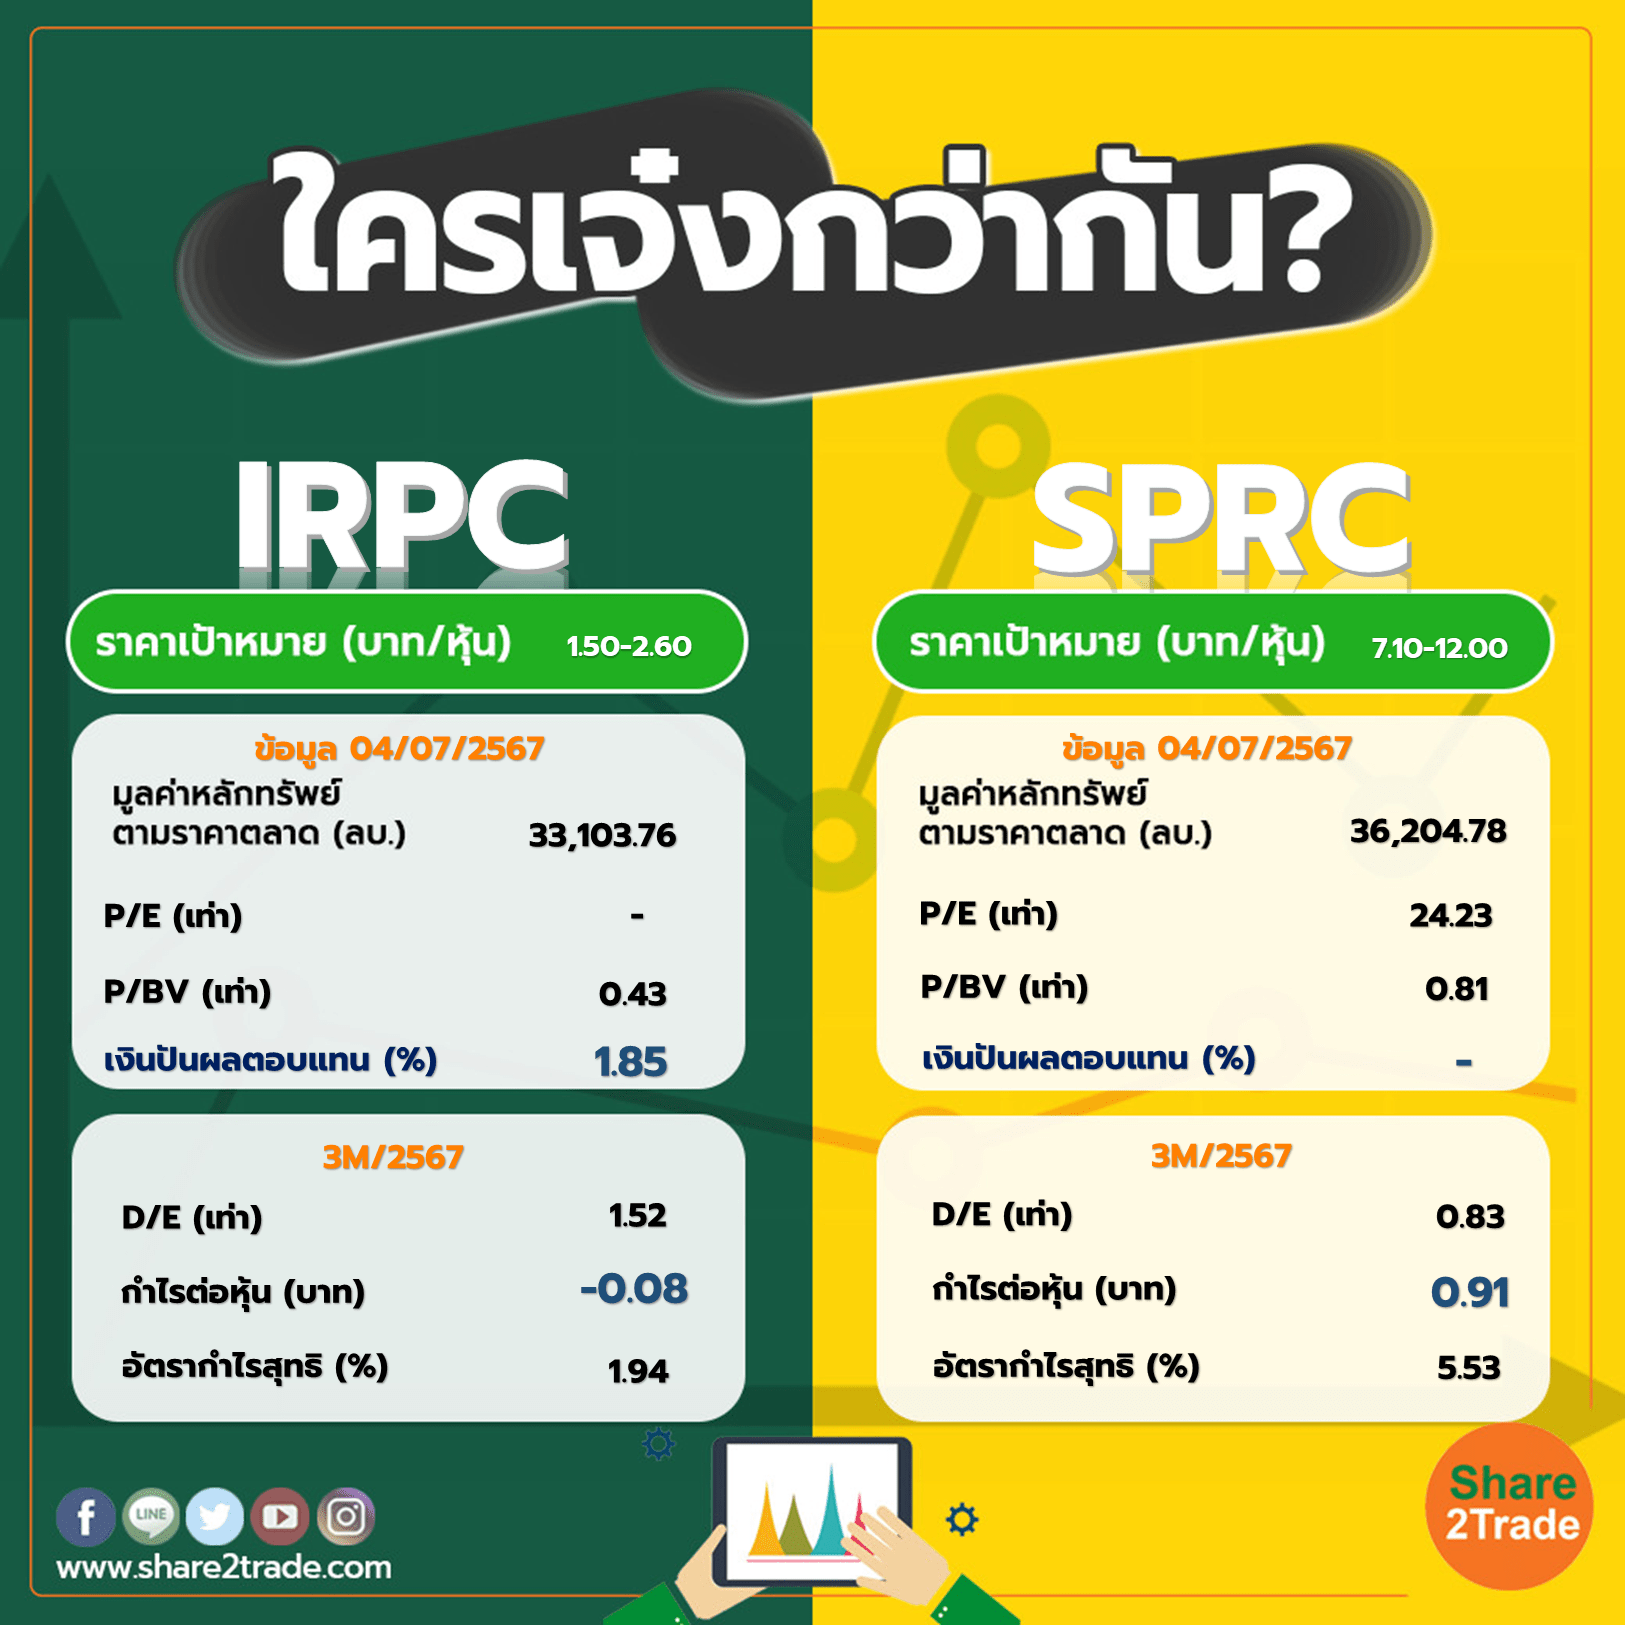 ใครเจ๋งกว่ากัน "IRPC" VS "SPRC"